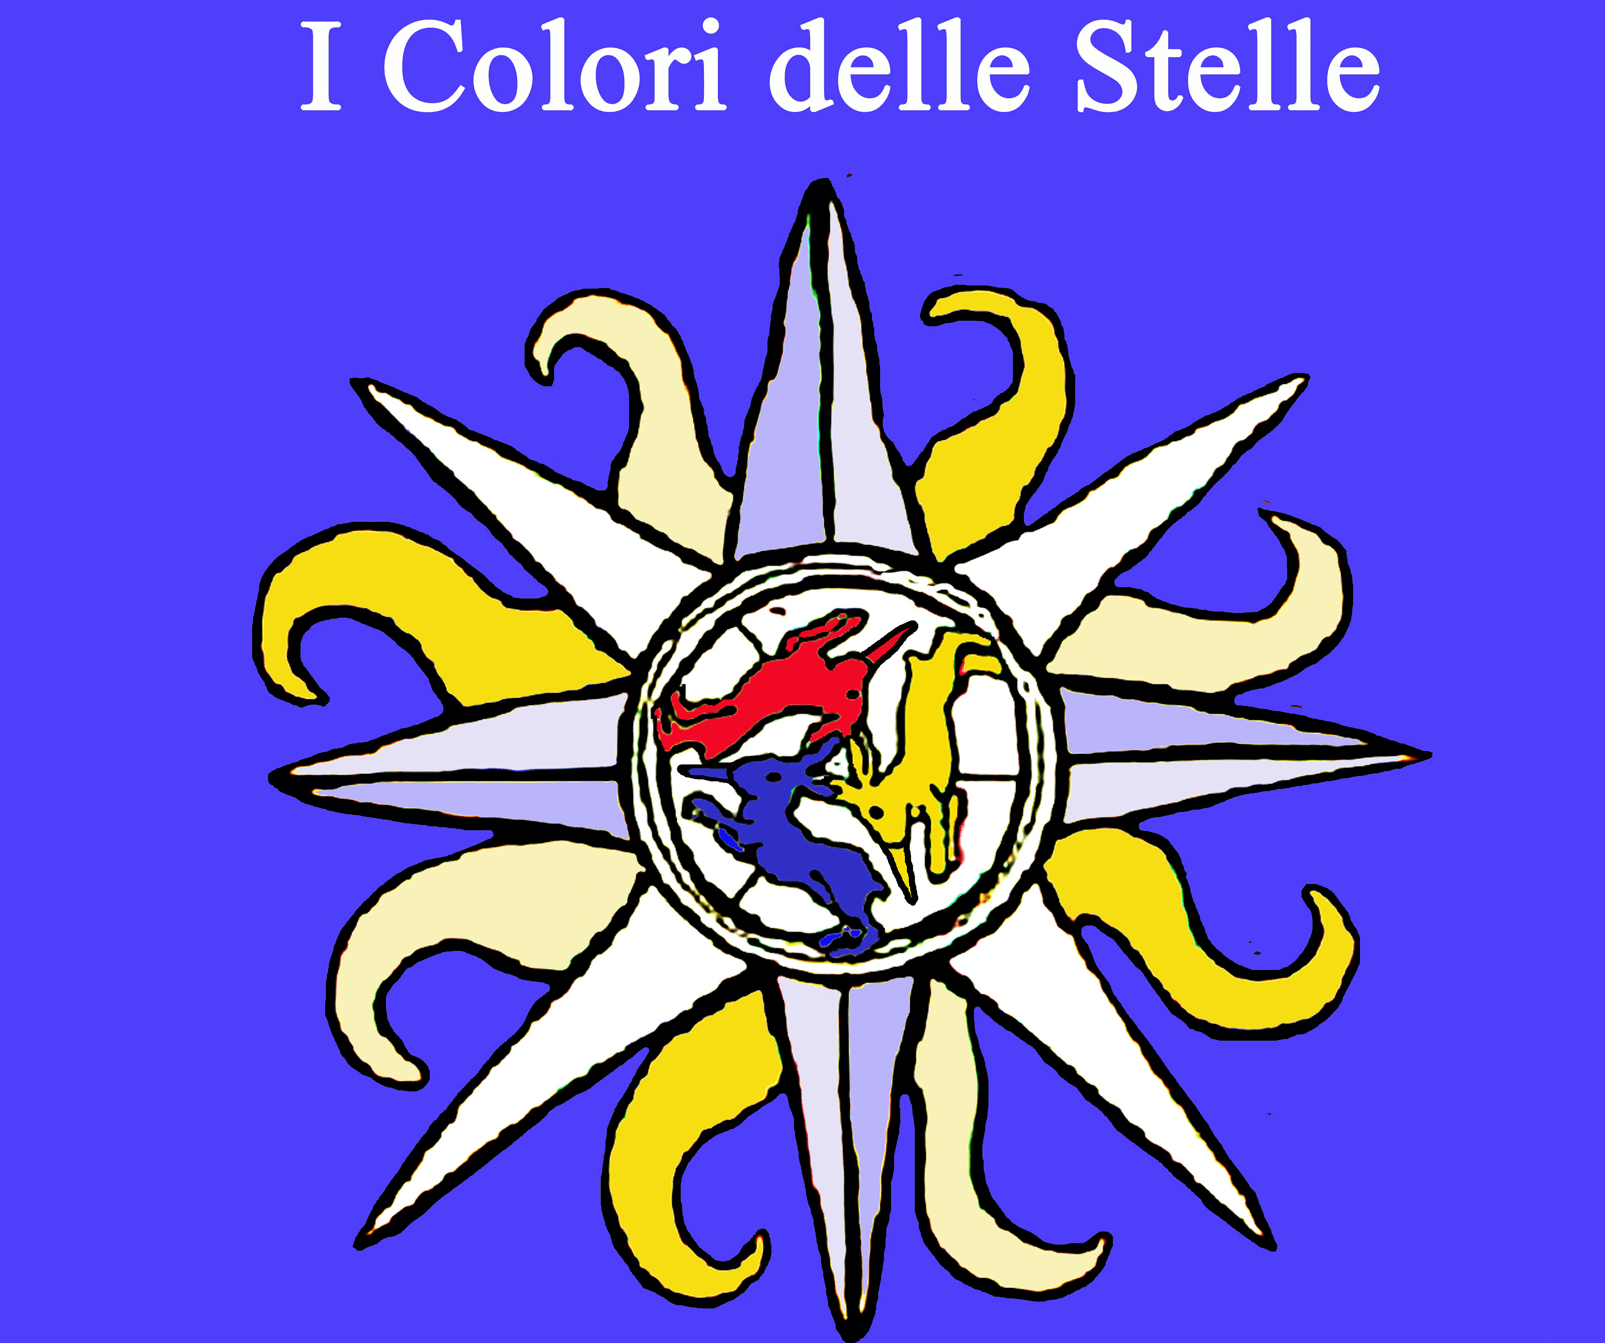 “I colori delle stelle” alla rassegna Libris di Borgo San Lorenzo